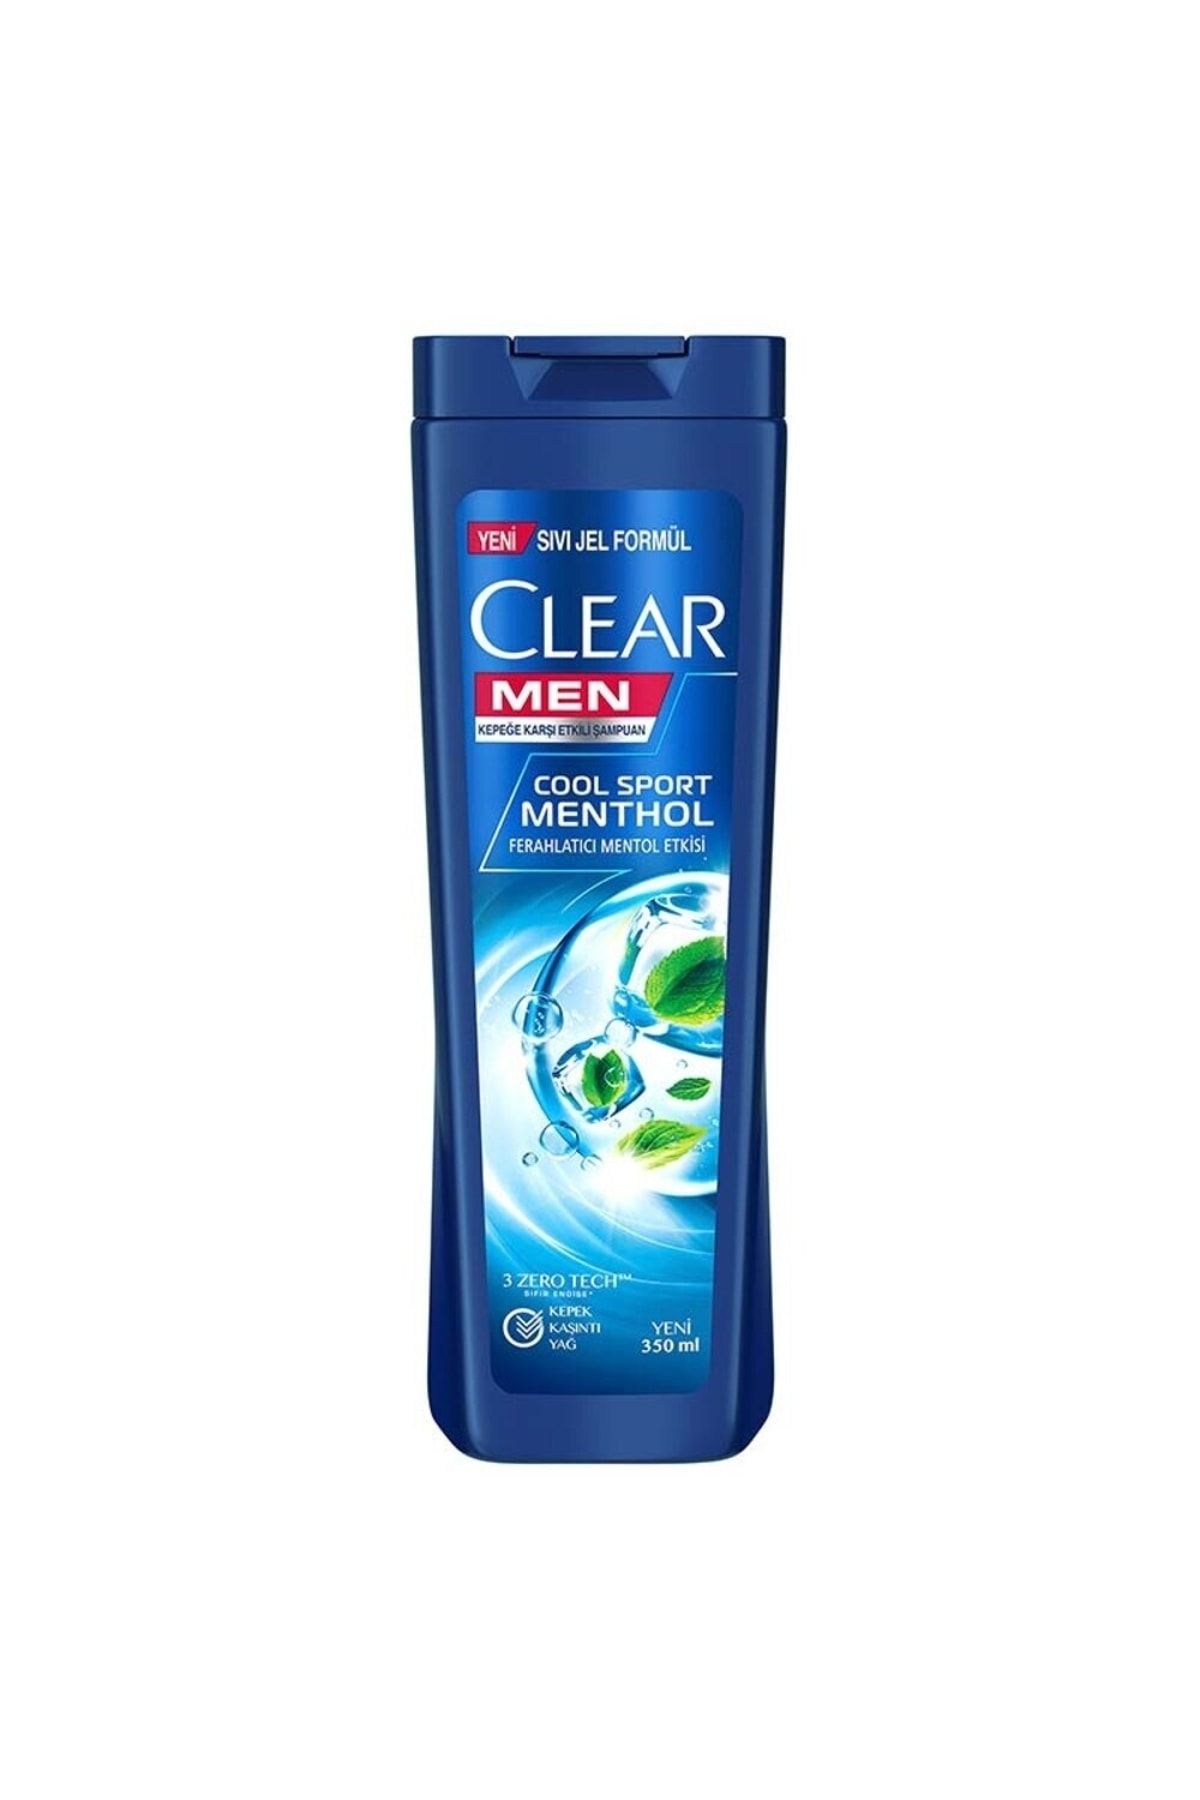 Clear Men Kepeğe Karşı Etkili Şampuan Cool Sport Menthol Ferahlatıcı Mentol Etkisi 350 Ml